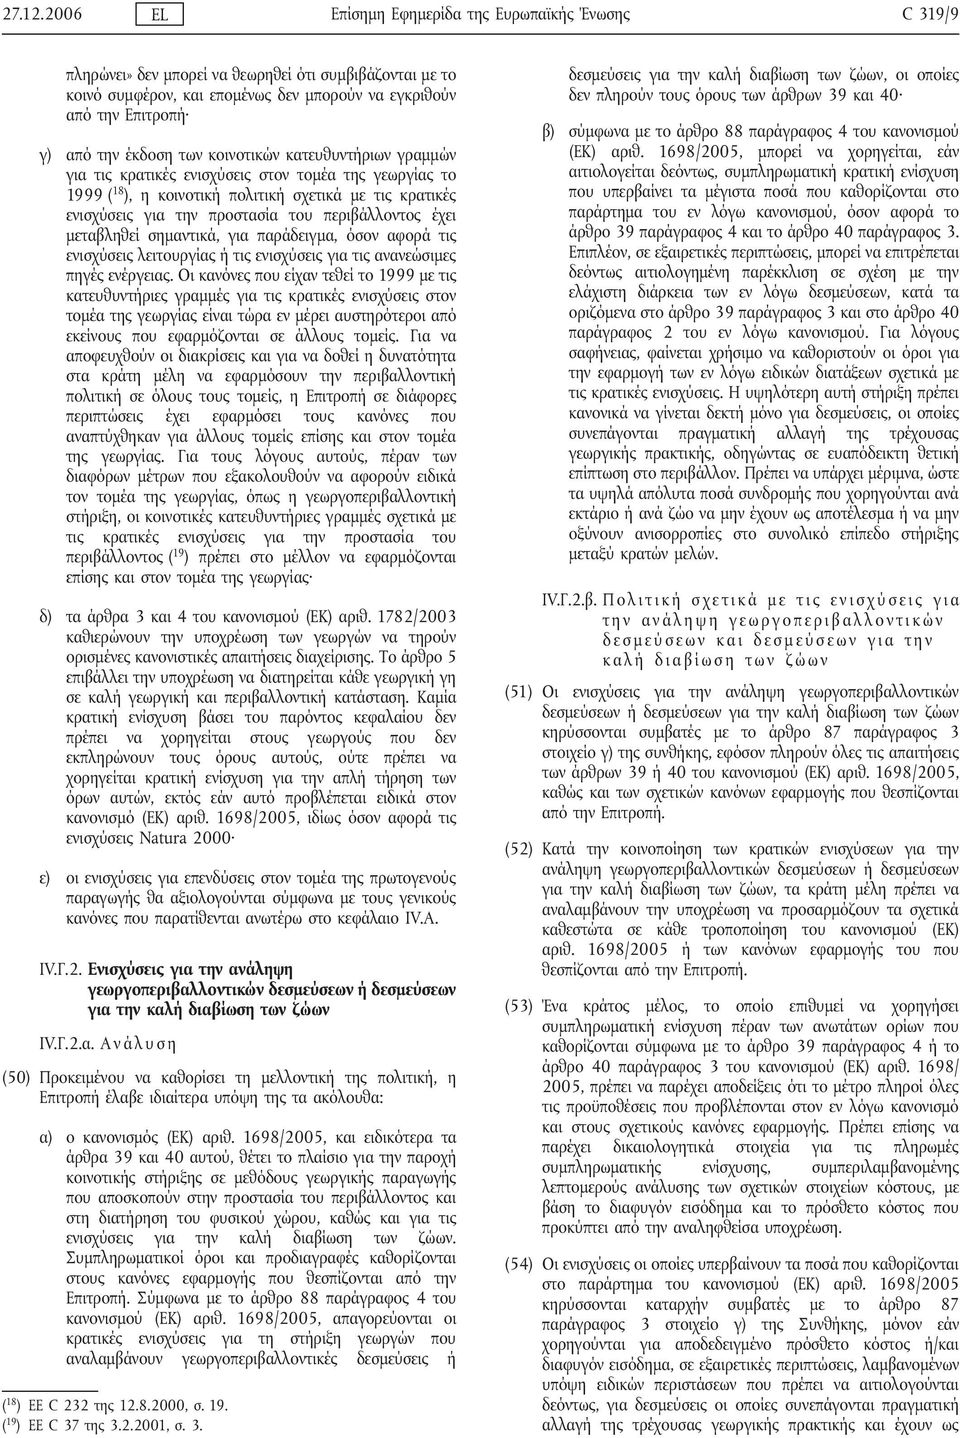 έκδοση των κοινοτικών κατευθυντήριων γραμμών για τις κρατικές ενισχύσεις στον τομέα της γεωργίας το 1999 ( 18 ), η κοινοτική πολιτική σχετικά με τις κρατικές ενισχύσεις για την προστασία του